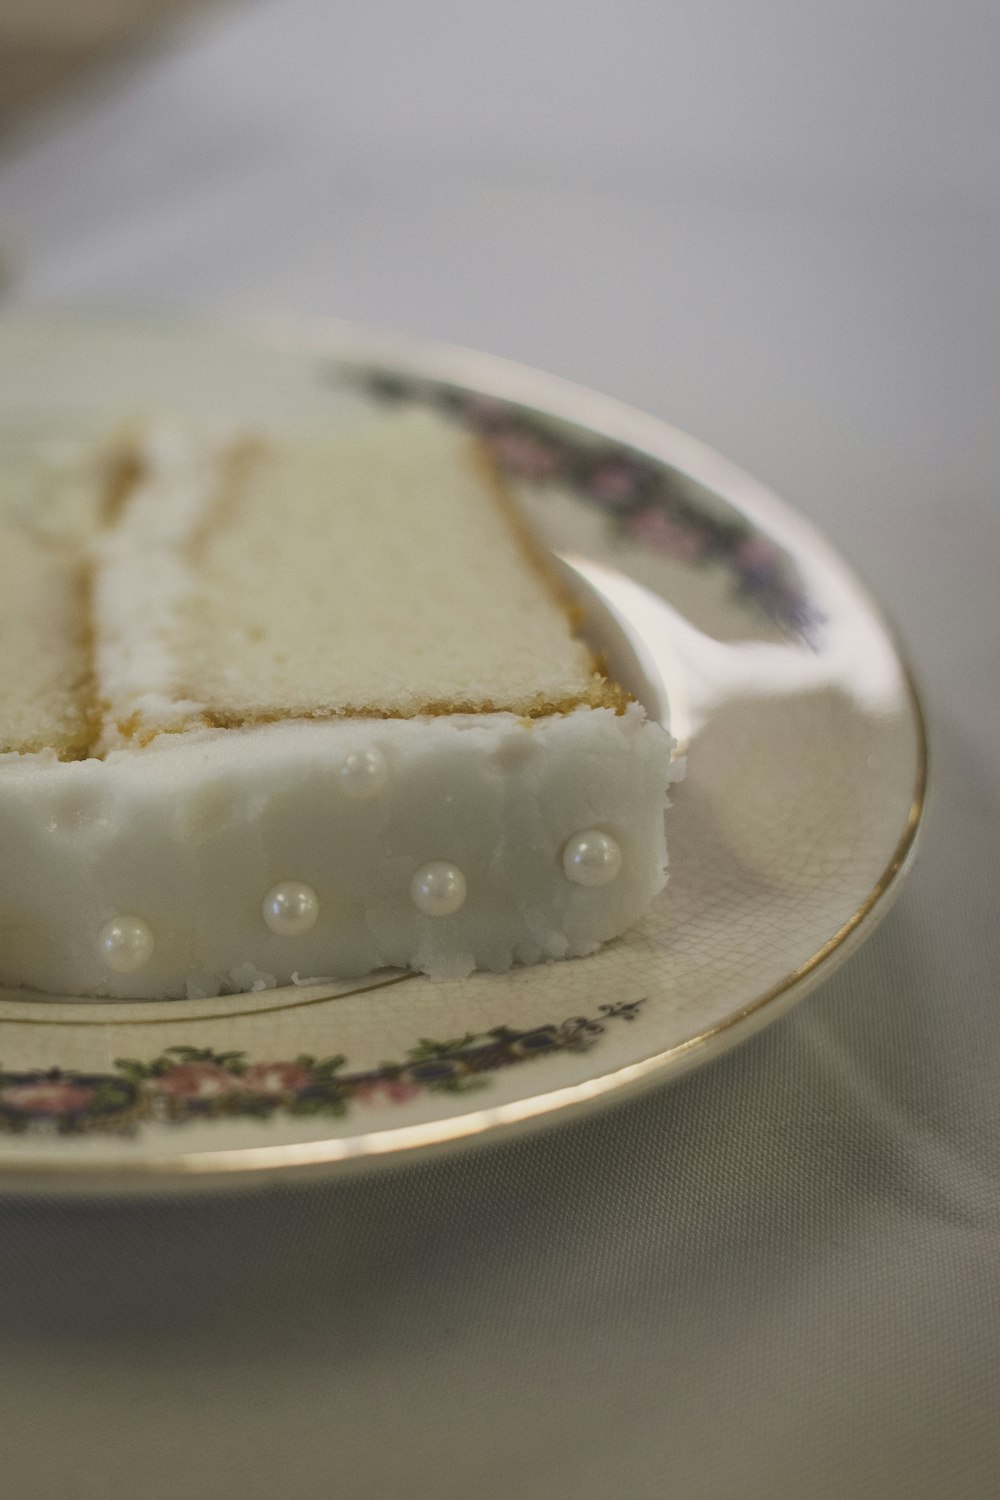 sliced of cake on white saucer